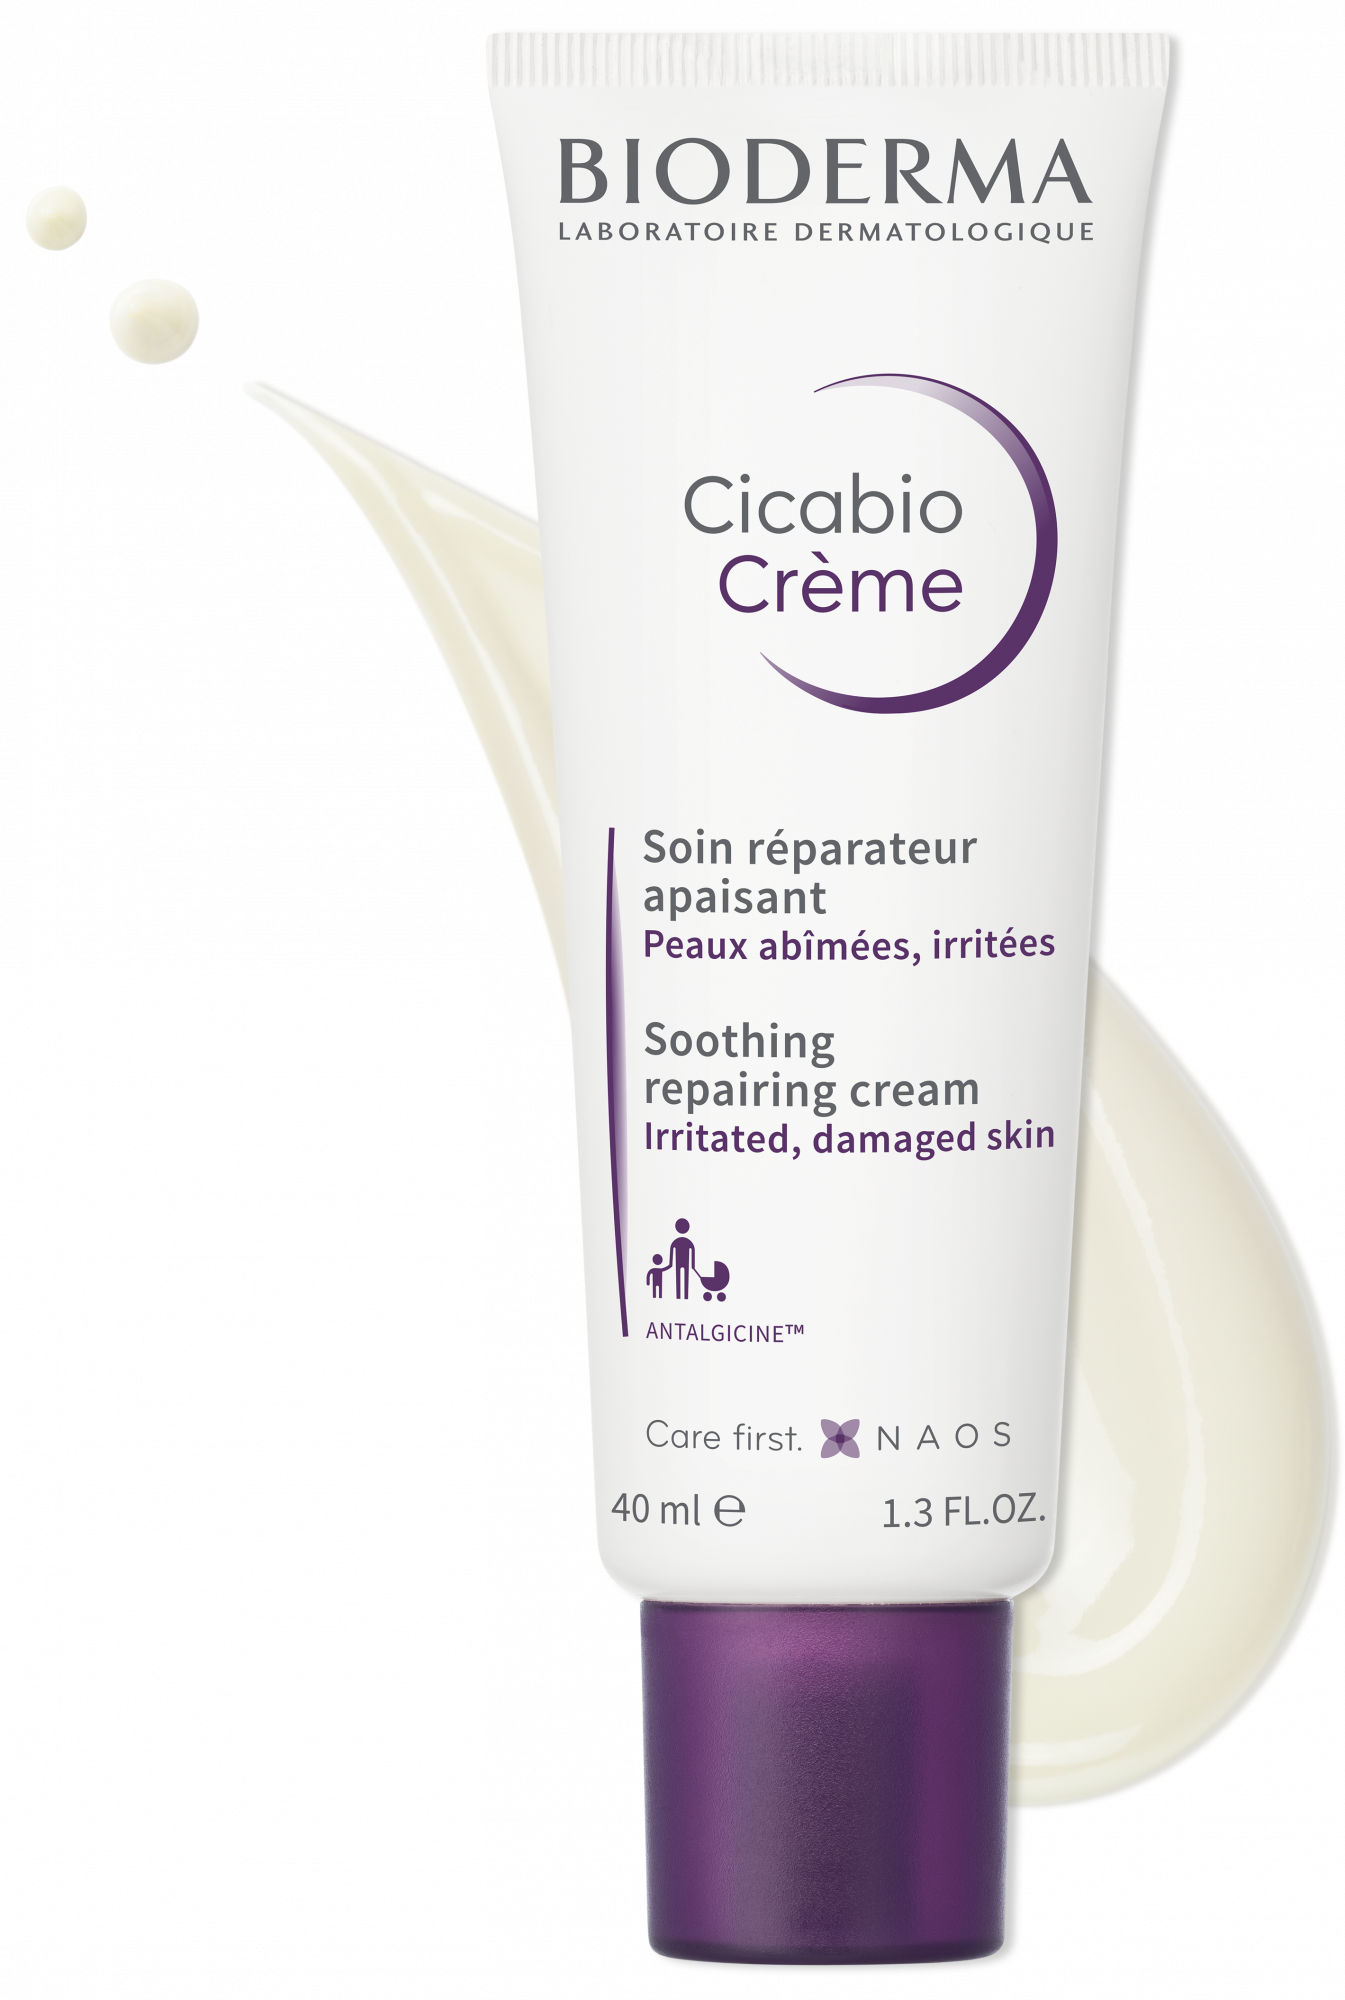 BIODERMA Cicabio Crème repairing cream | For irritated & damaged skin, face